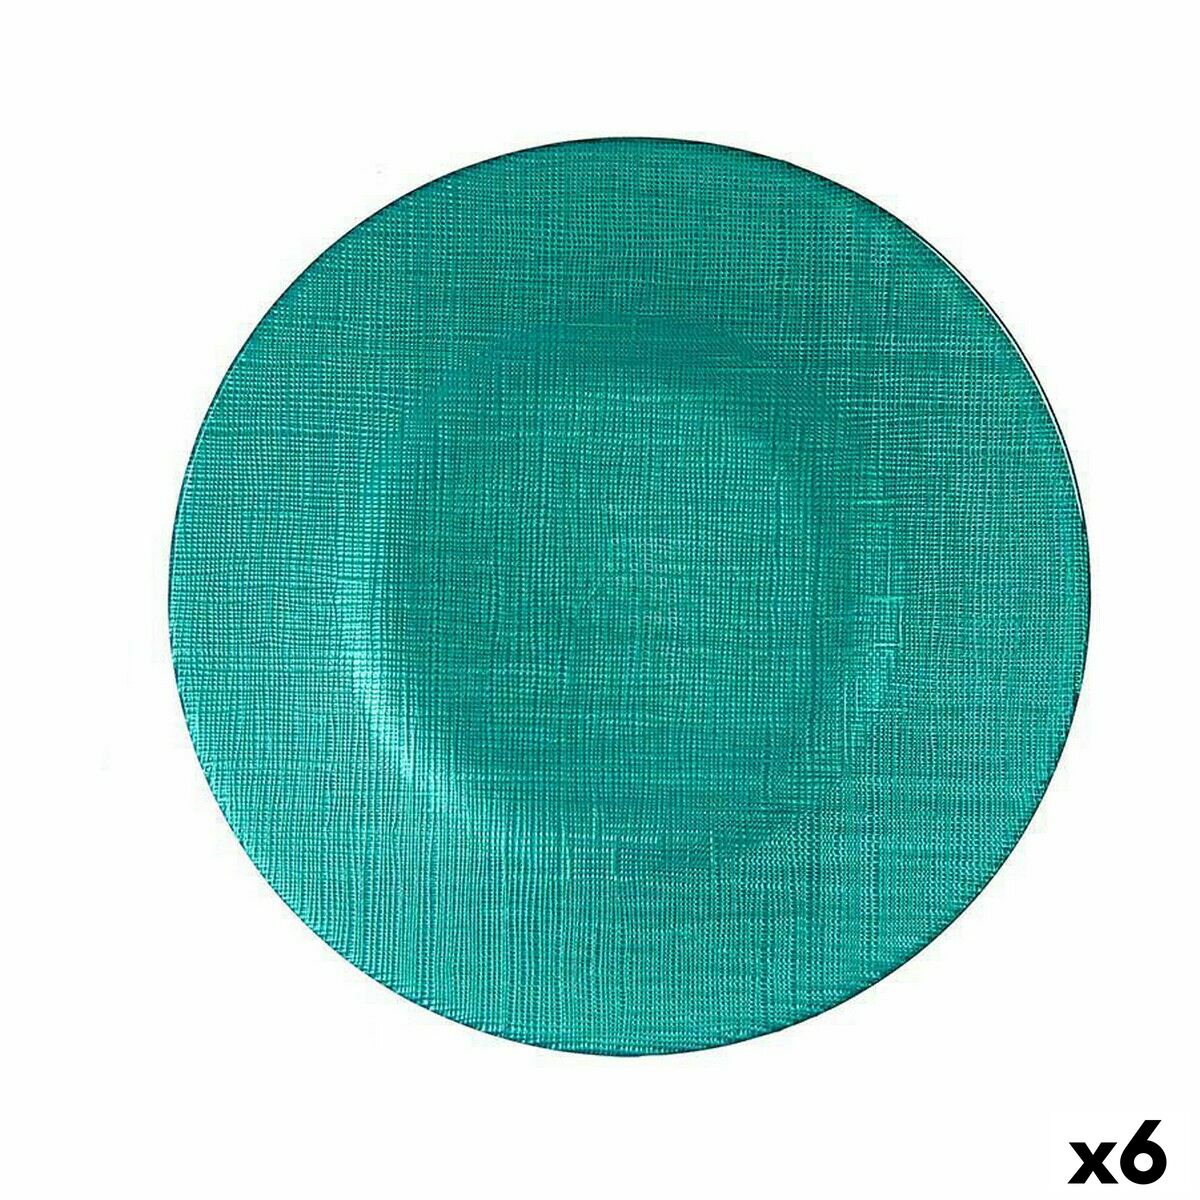 Assiette plate Turquoise verre 6 Unités (21 x 2 x 21 cm)